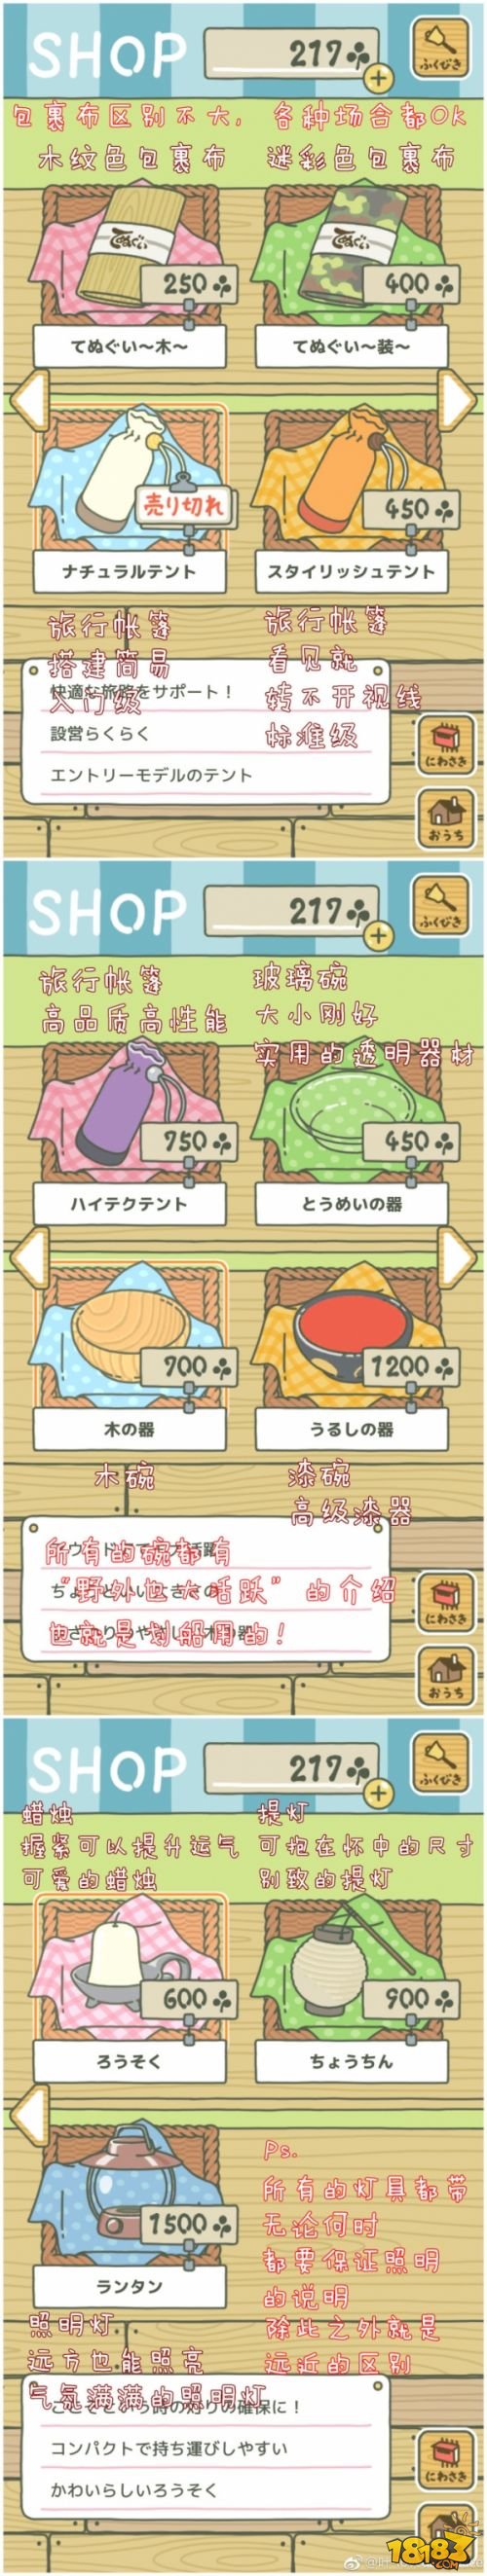 养青蛙的游戏日文界面中文翻译 旅行青蛙中文界面翻译对照图